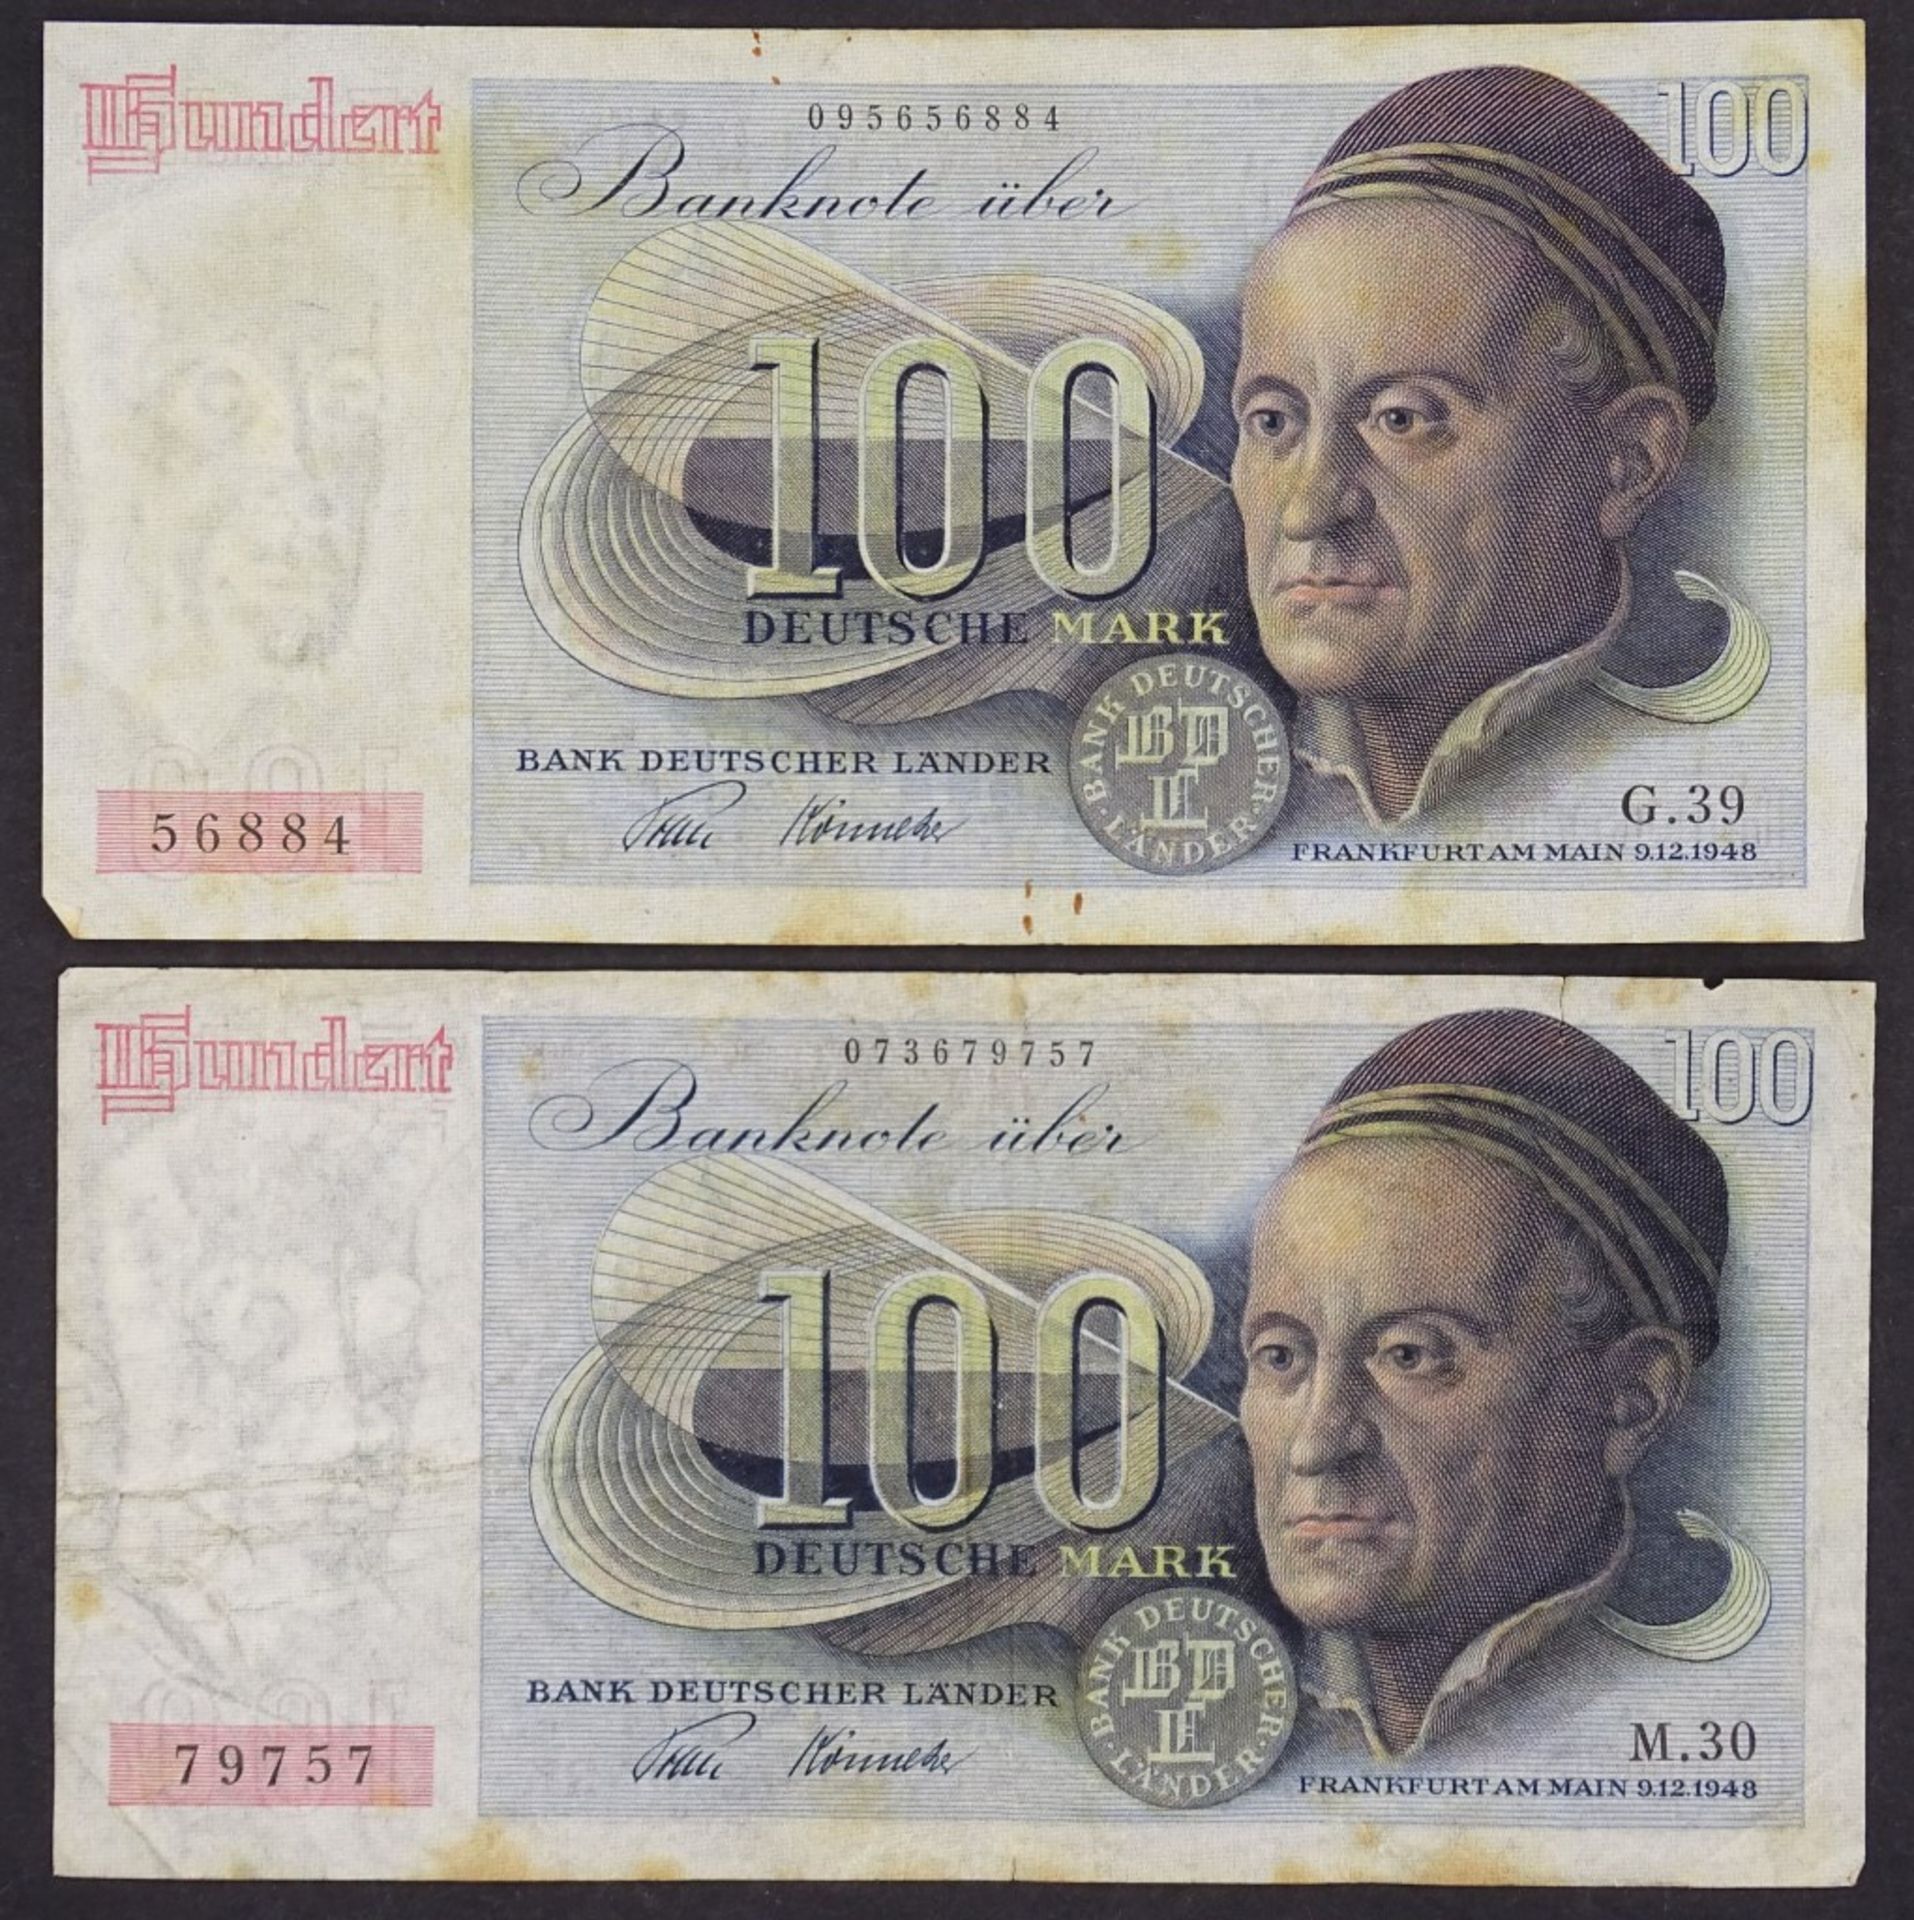 Zwei Banknoten - 100 Deutsche Mark 1948 - Bank Deutscher Lände- - -22.61 % buyer's premium on the